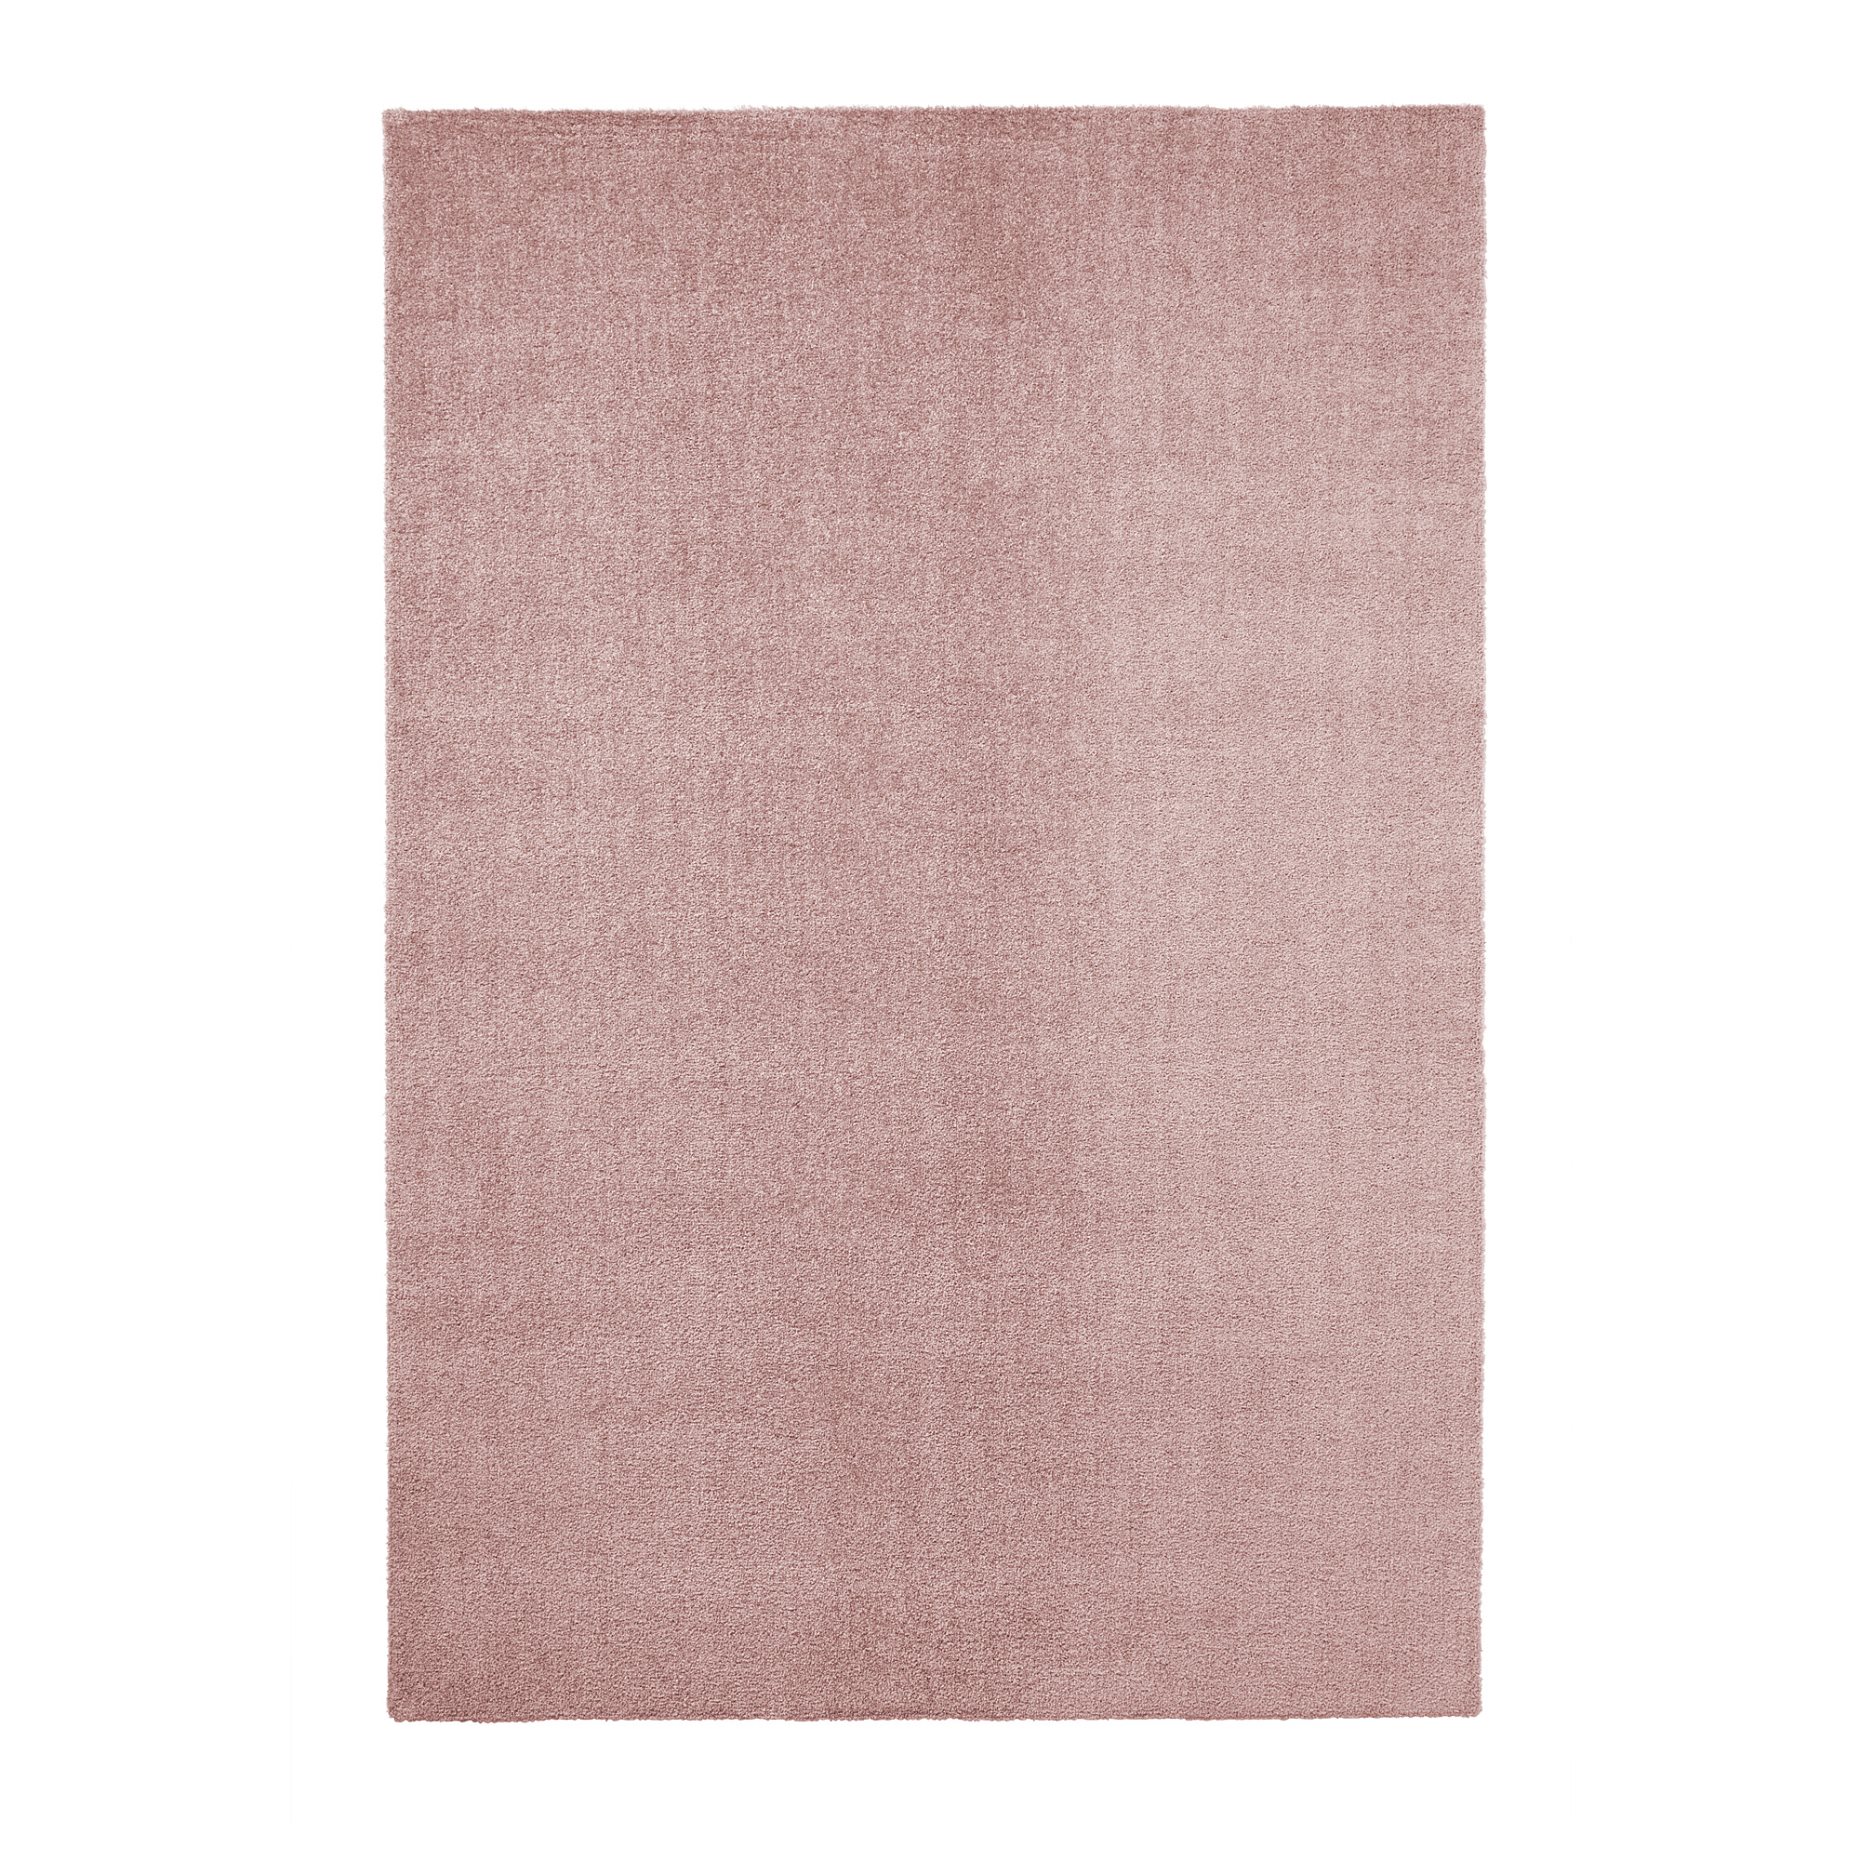 KNARDRUP, rug low pile, 133x195 cm, 504.926.13